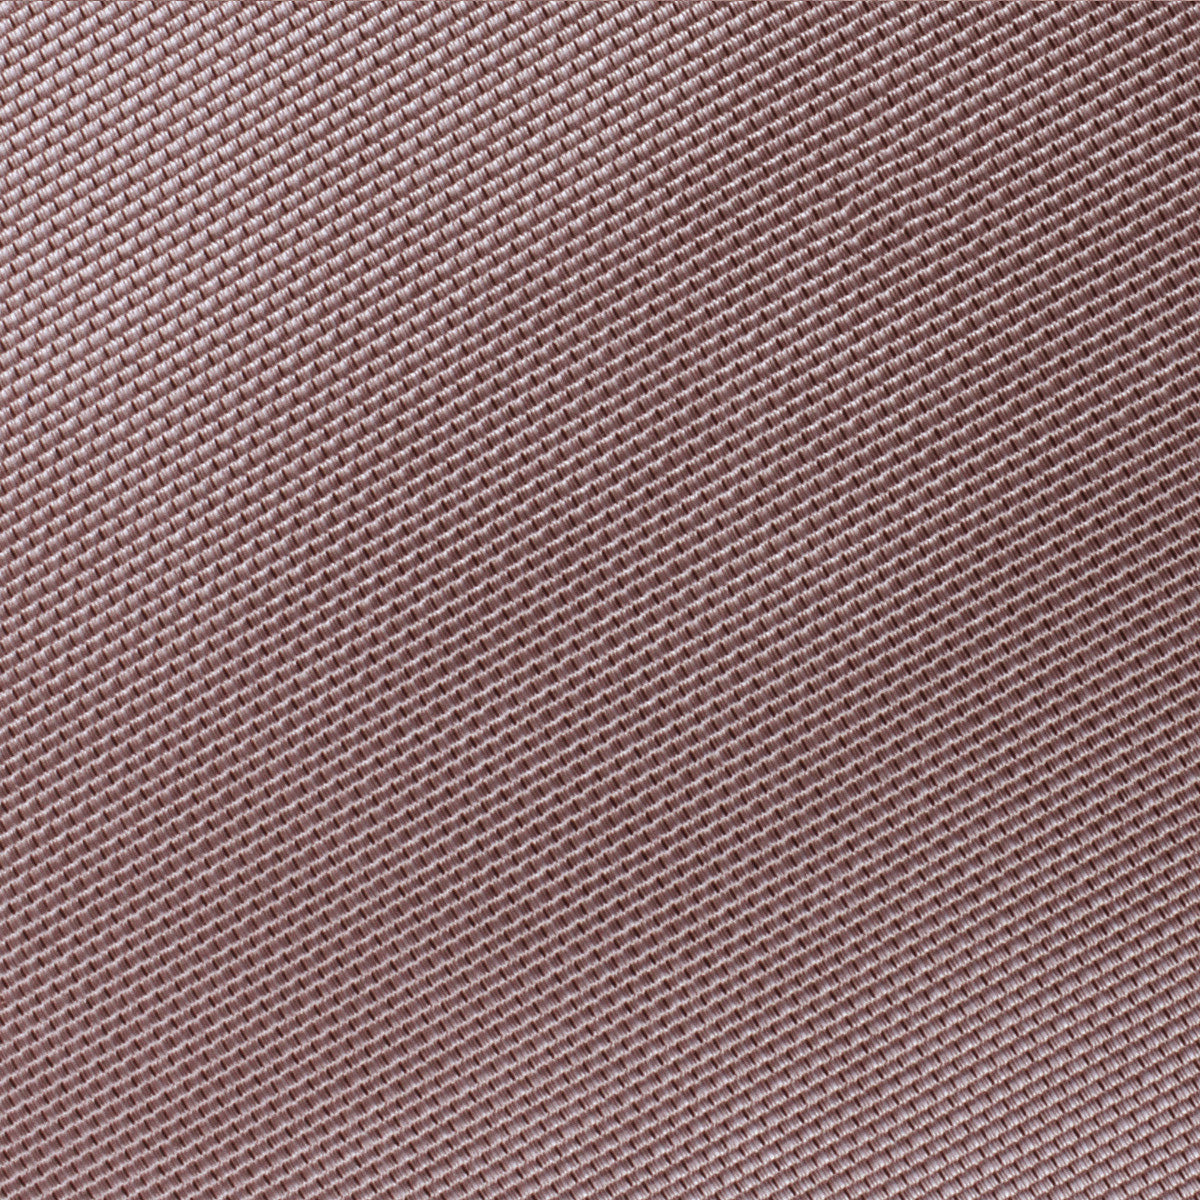 Dusty Mauve Quartz Weave Bow Tie Fabric